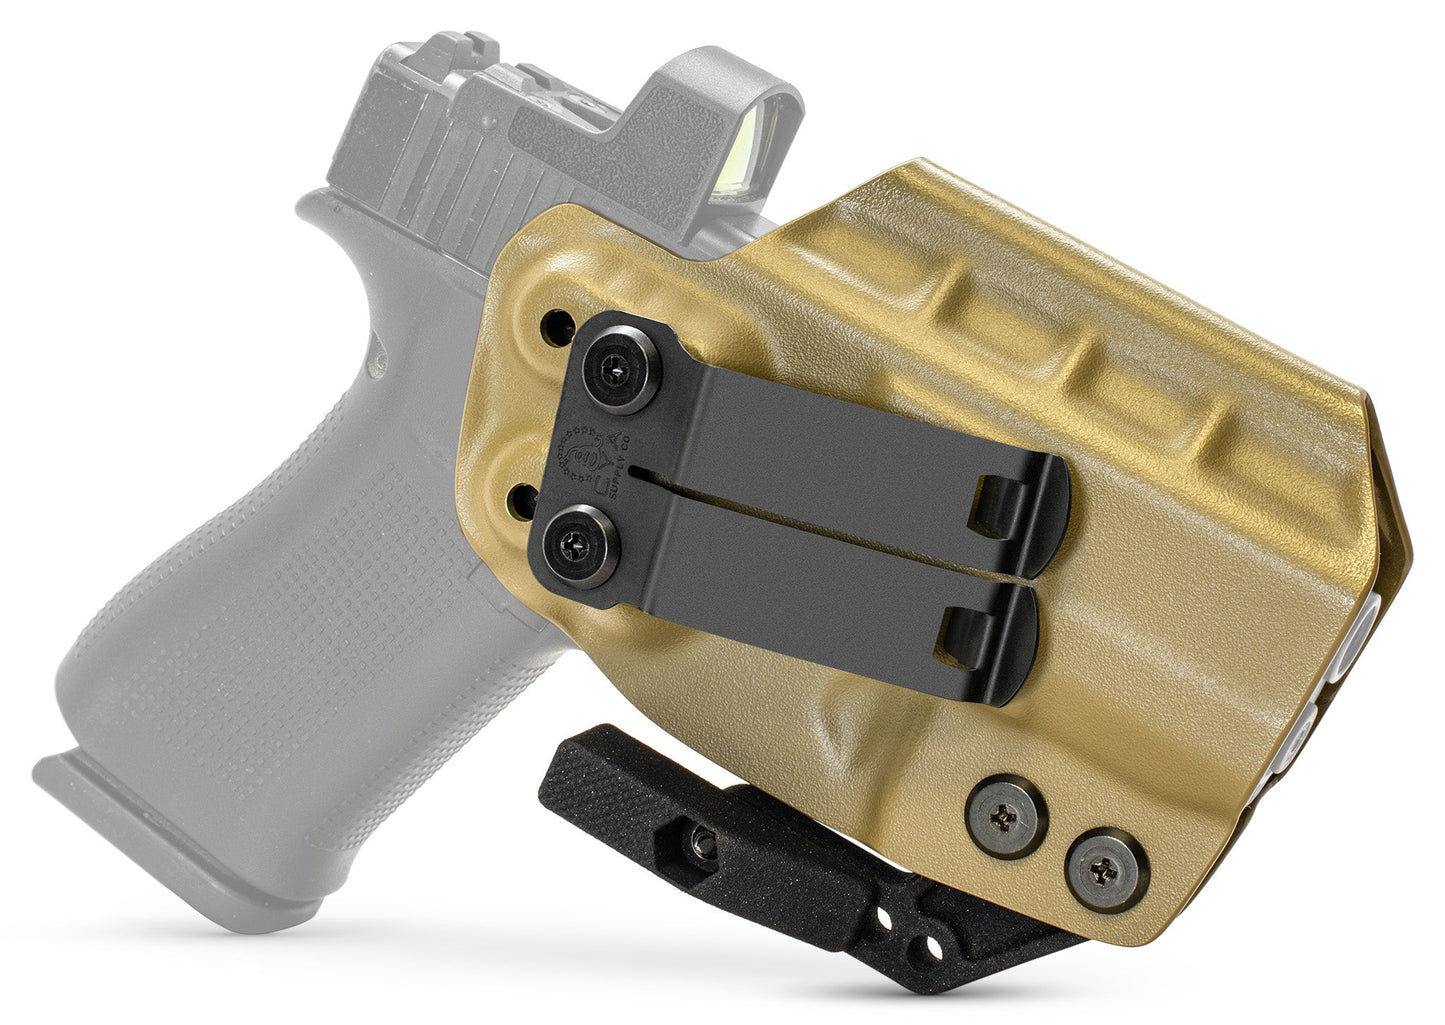 Glock 22 (Gen 3-4) PATH IWB CYA Supply Co.